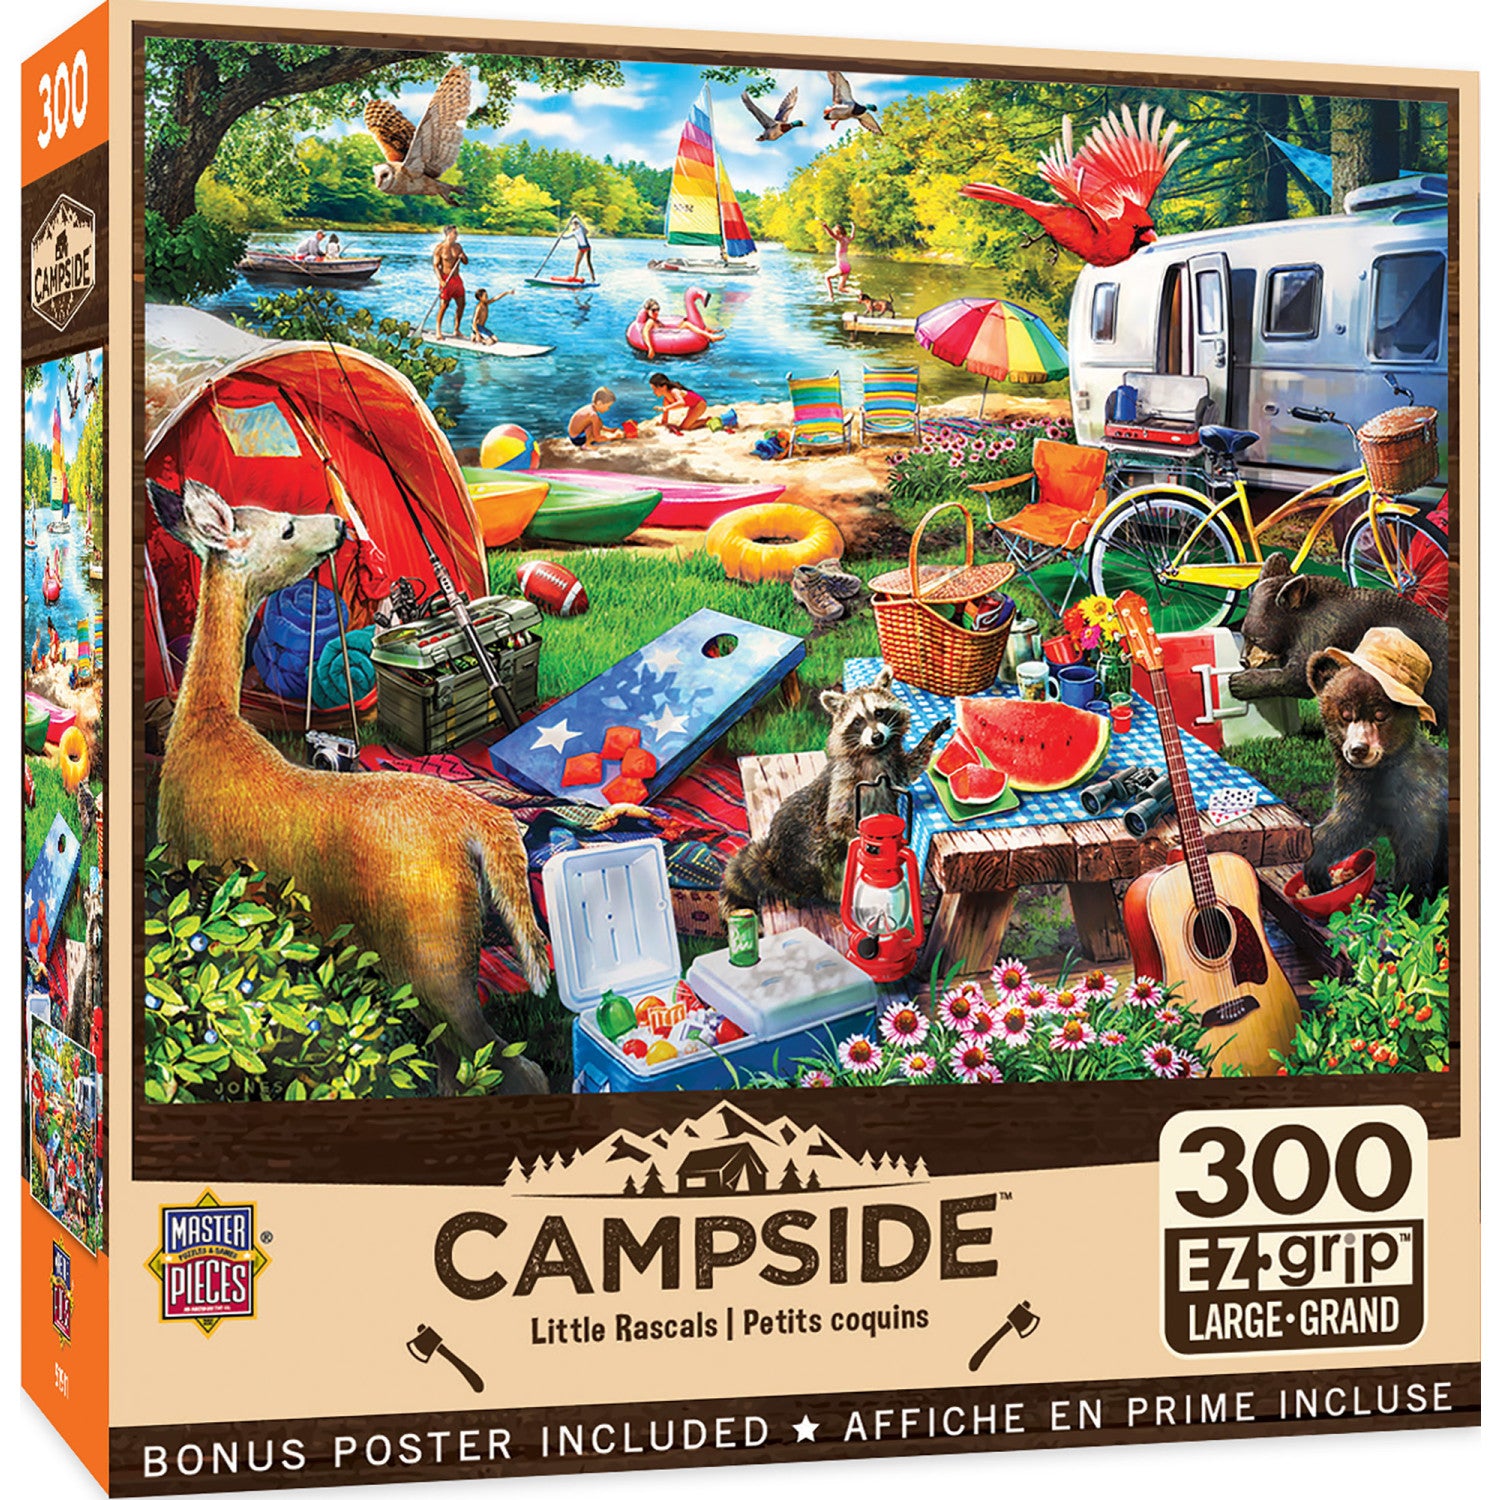 Campside - Little Rascals 300 Piece EZ Grip Jigsaw Puzzle